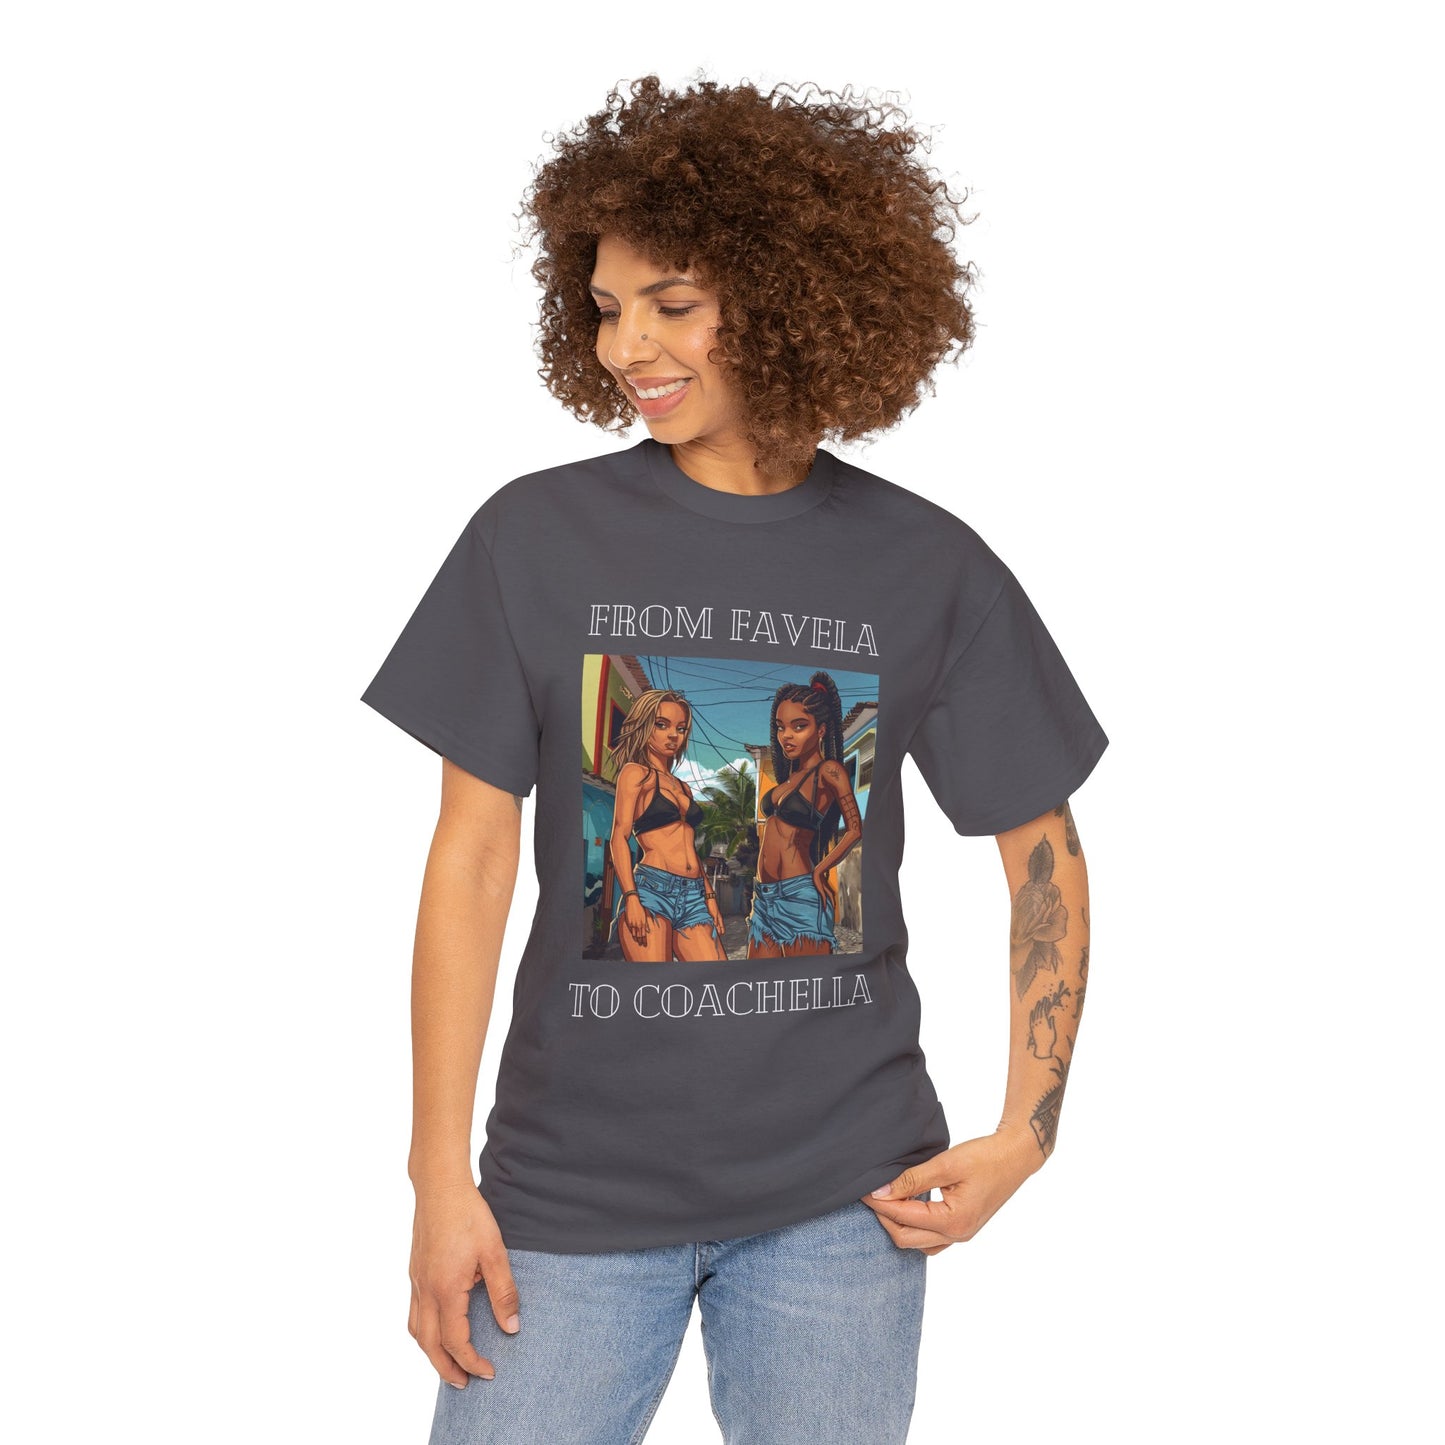 From Favela To Coachella T Shirt, Party T shirt, Coachella, Brazilian Girls T Shirt